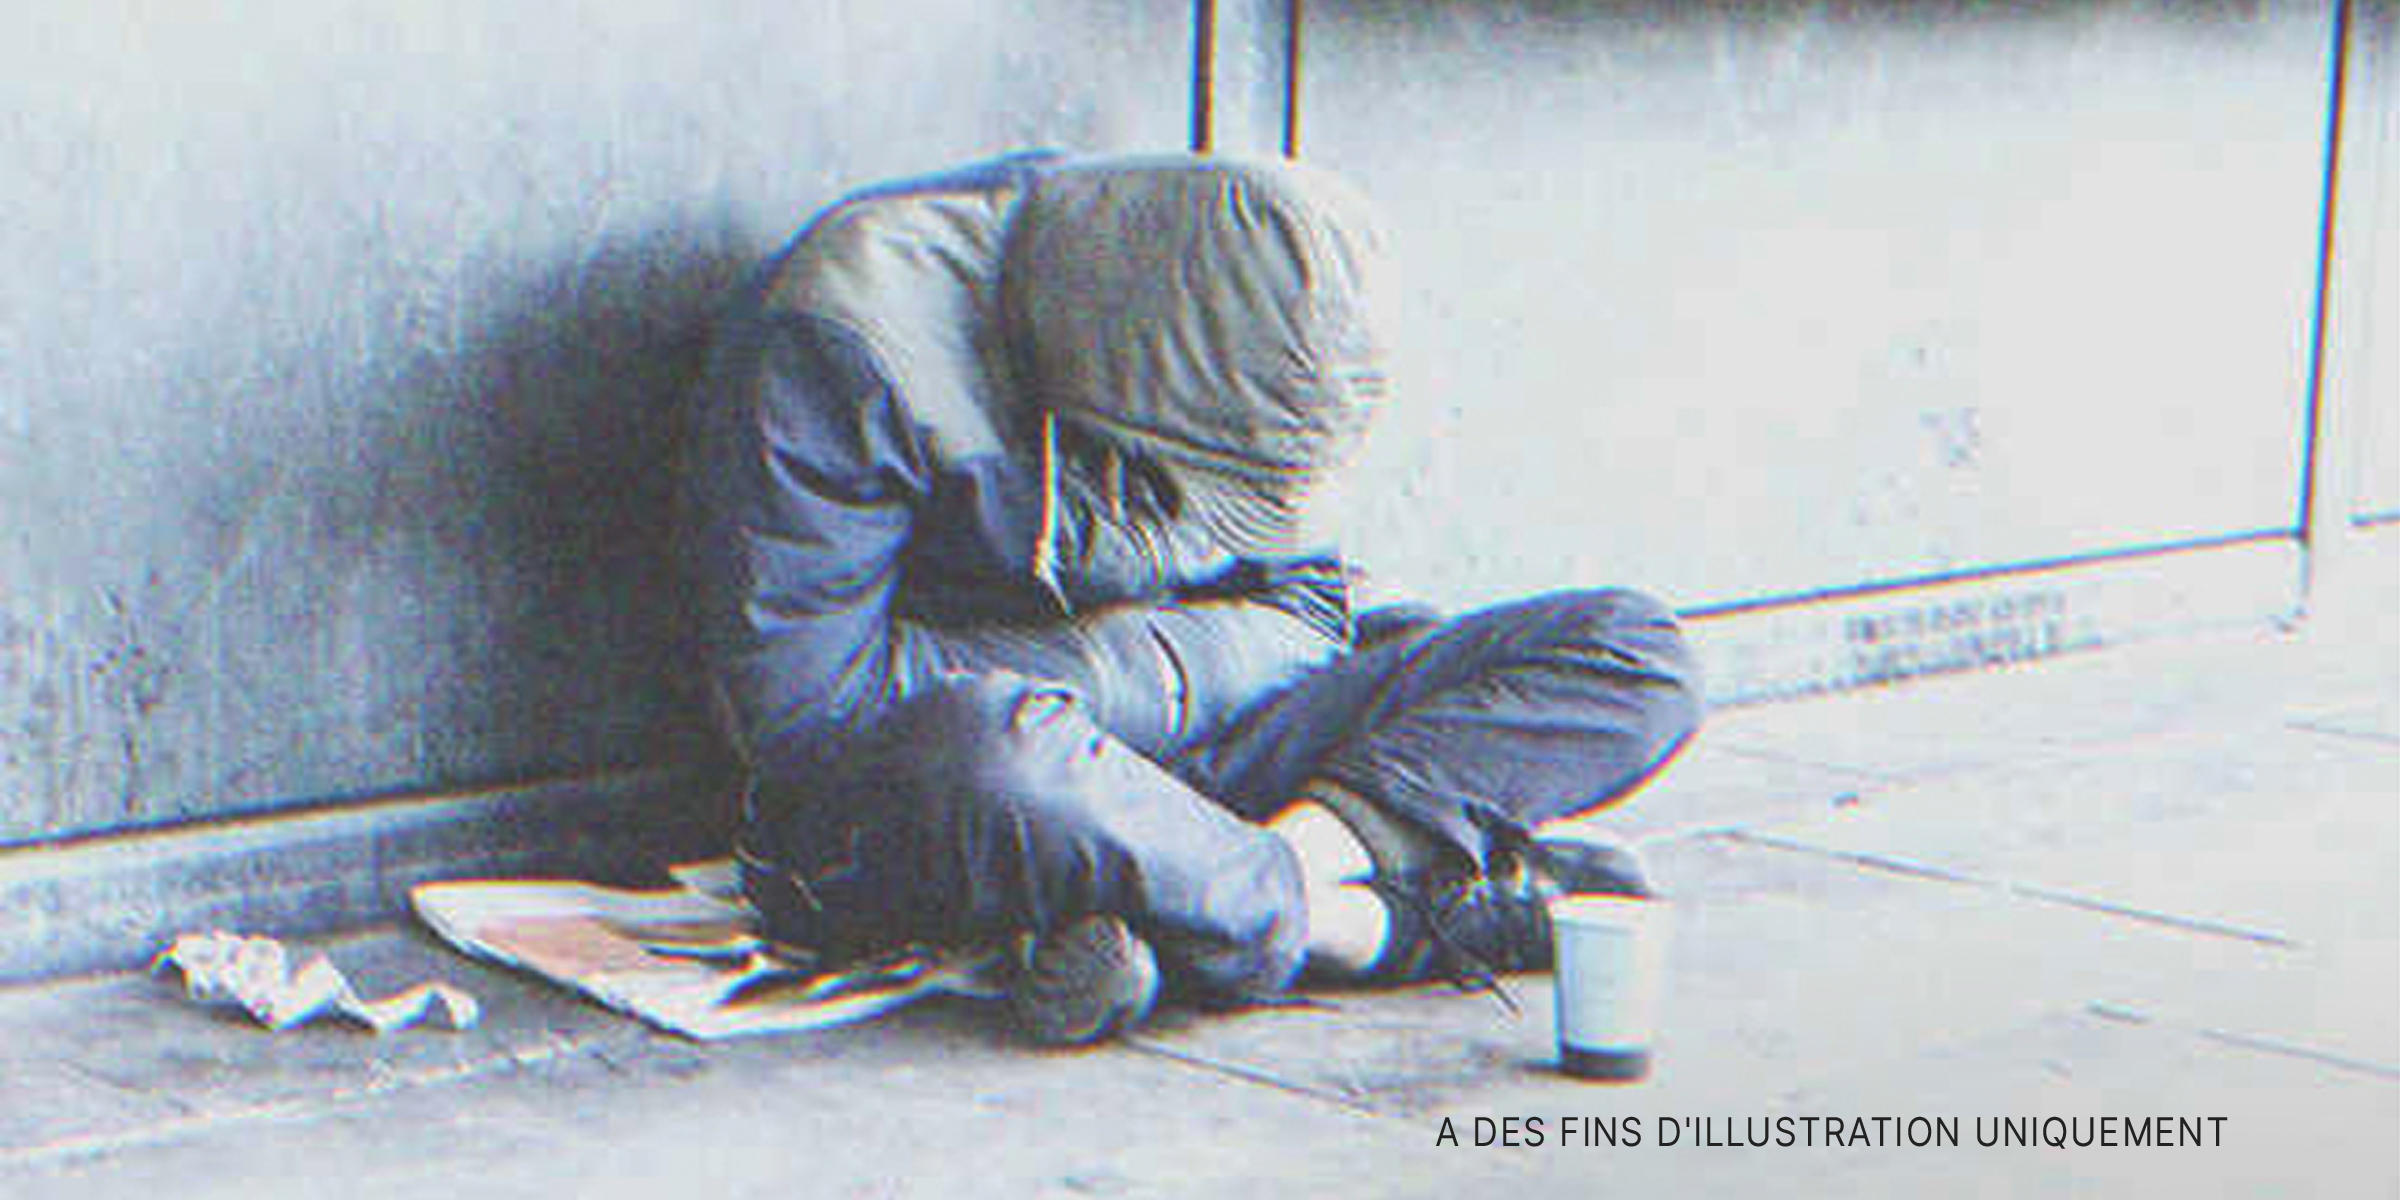 Un sans-abri assis sur le sol | Source : Shutterstock.com